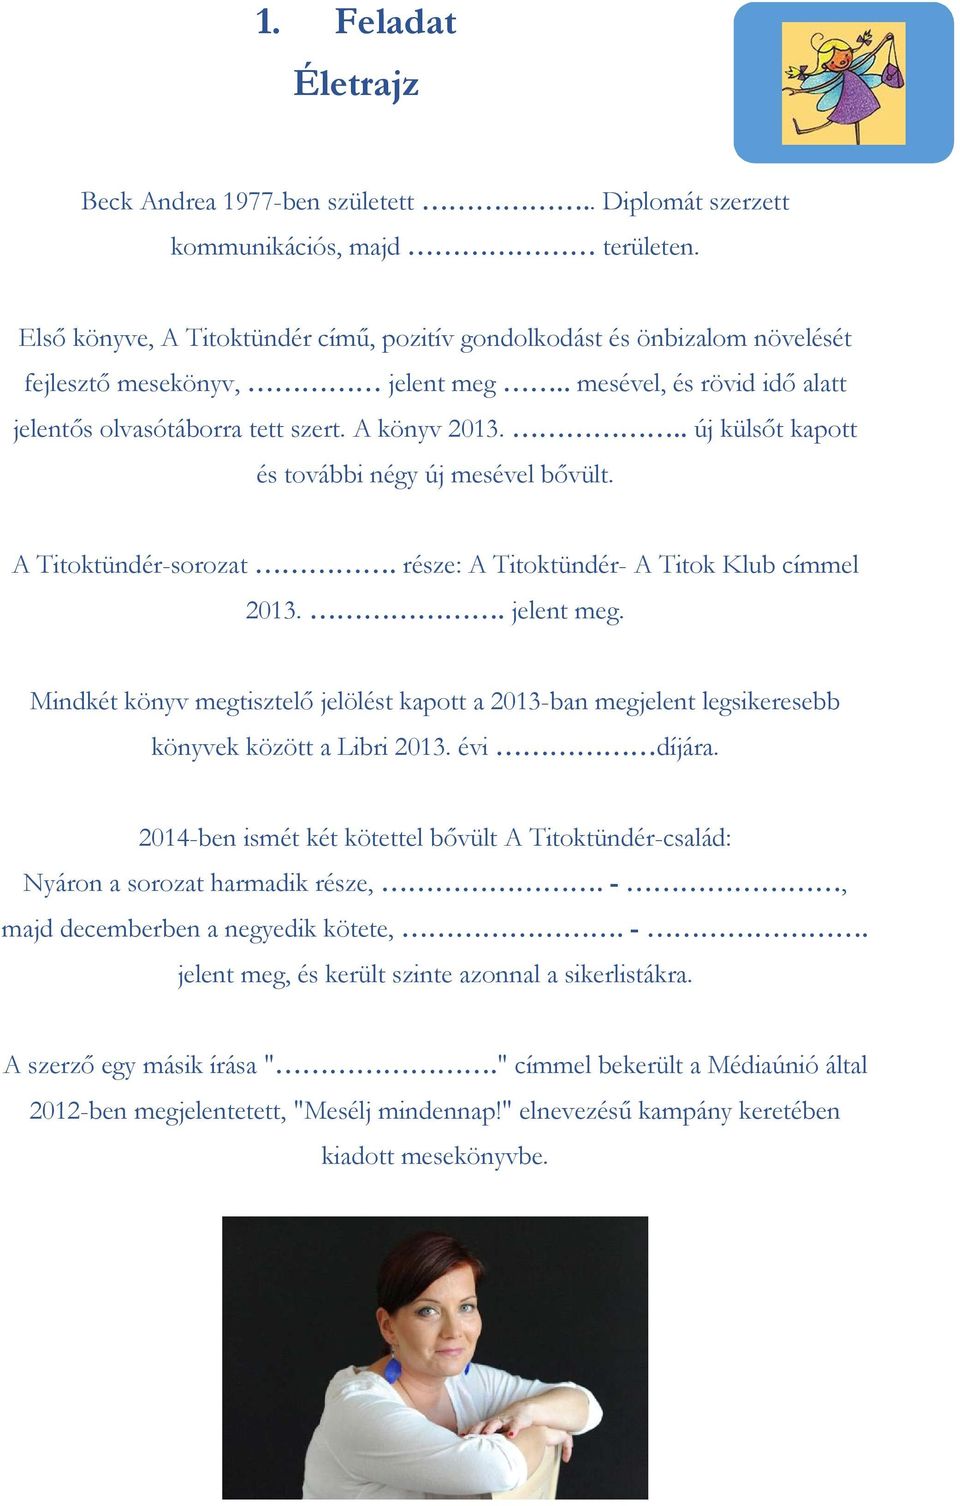 .. új külsőt kapott és további négy új mesével bővült. A Titoktündér-sorozat. része: A Titoktündér- A Titok Klub címmel 2013.. jelent meg.